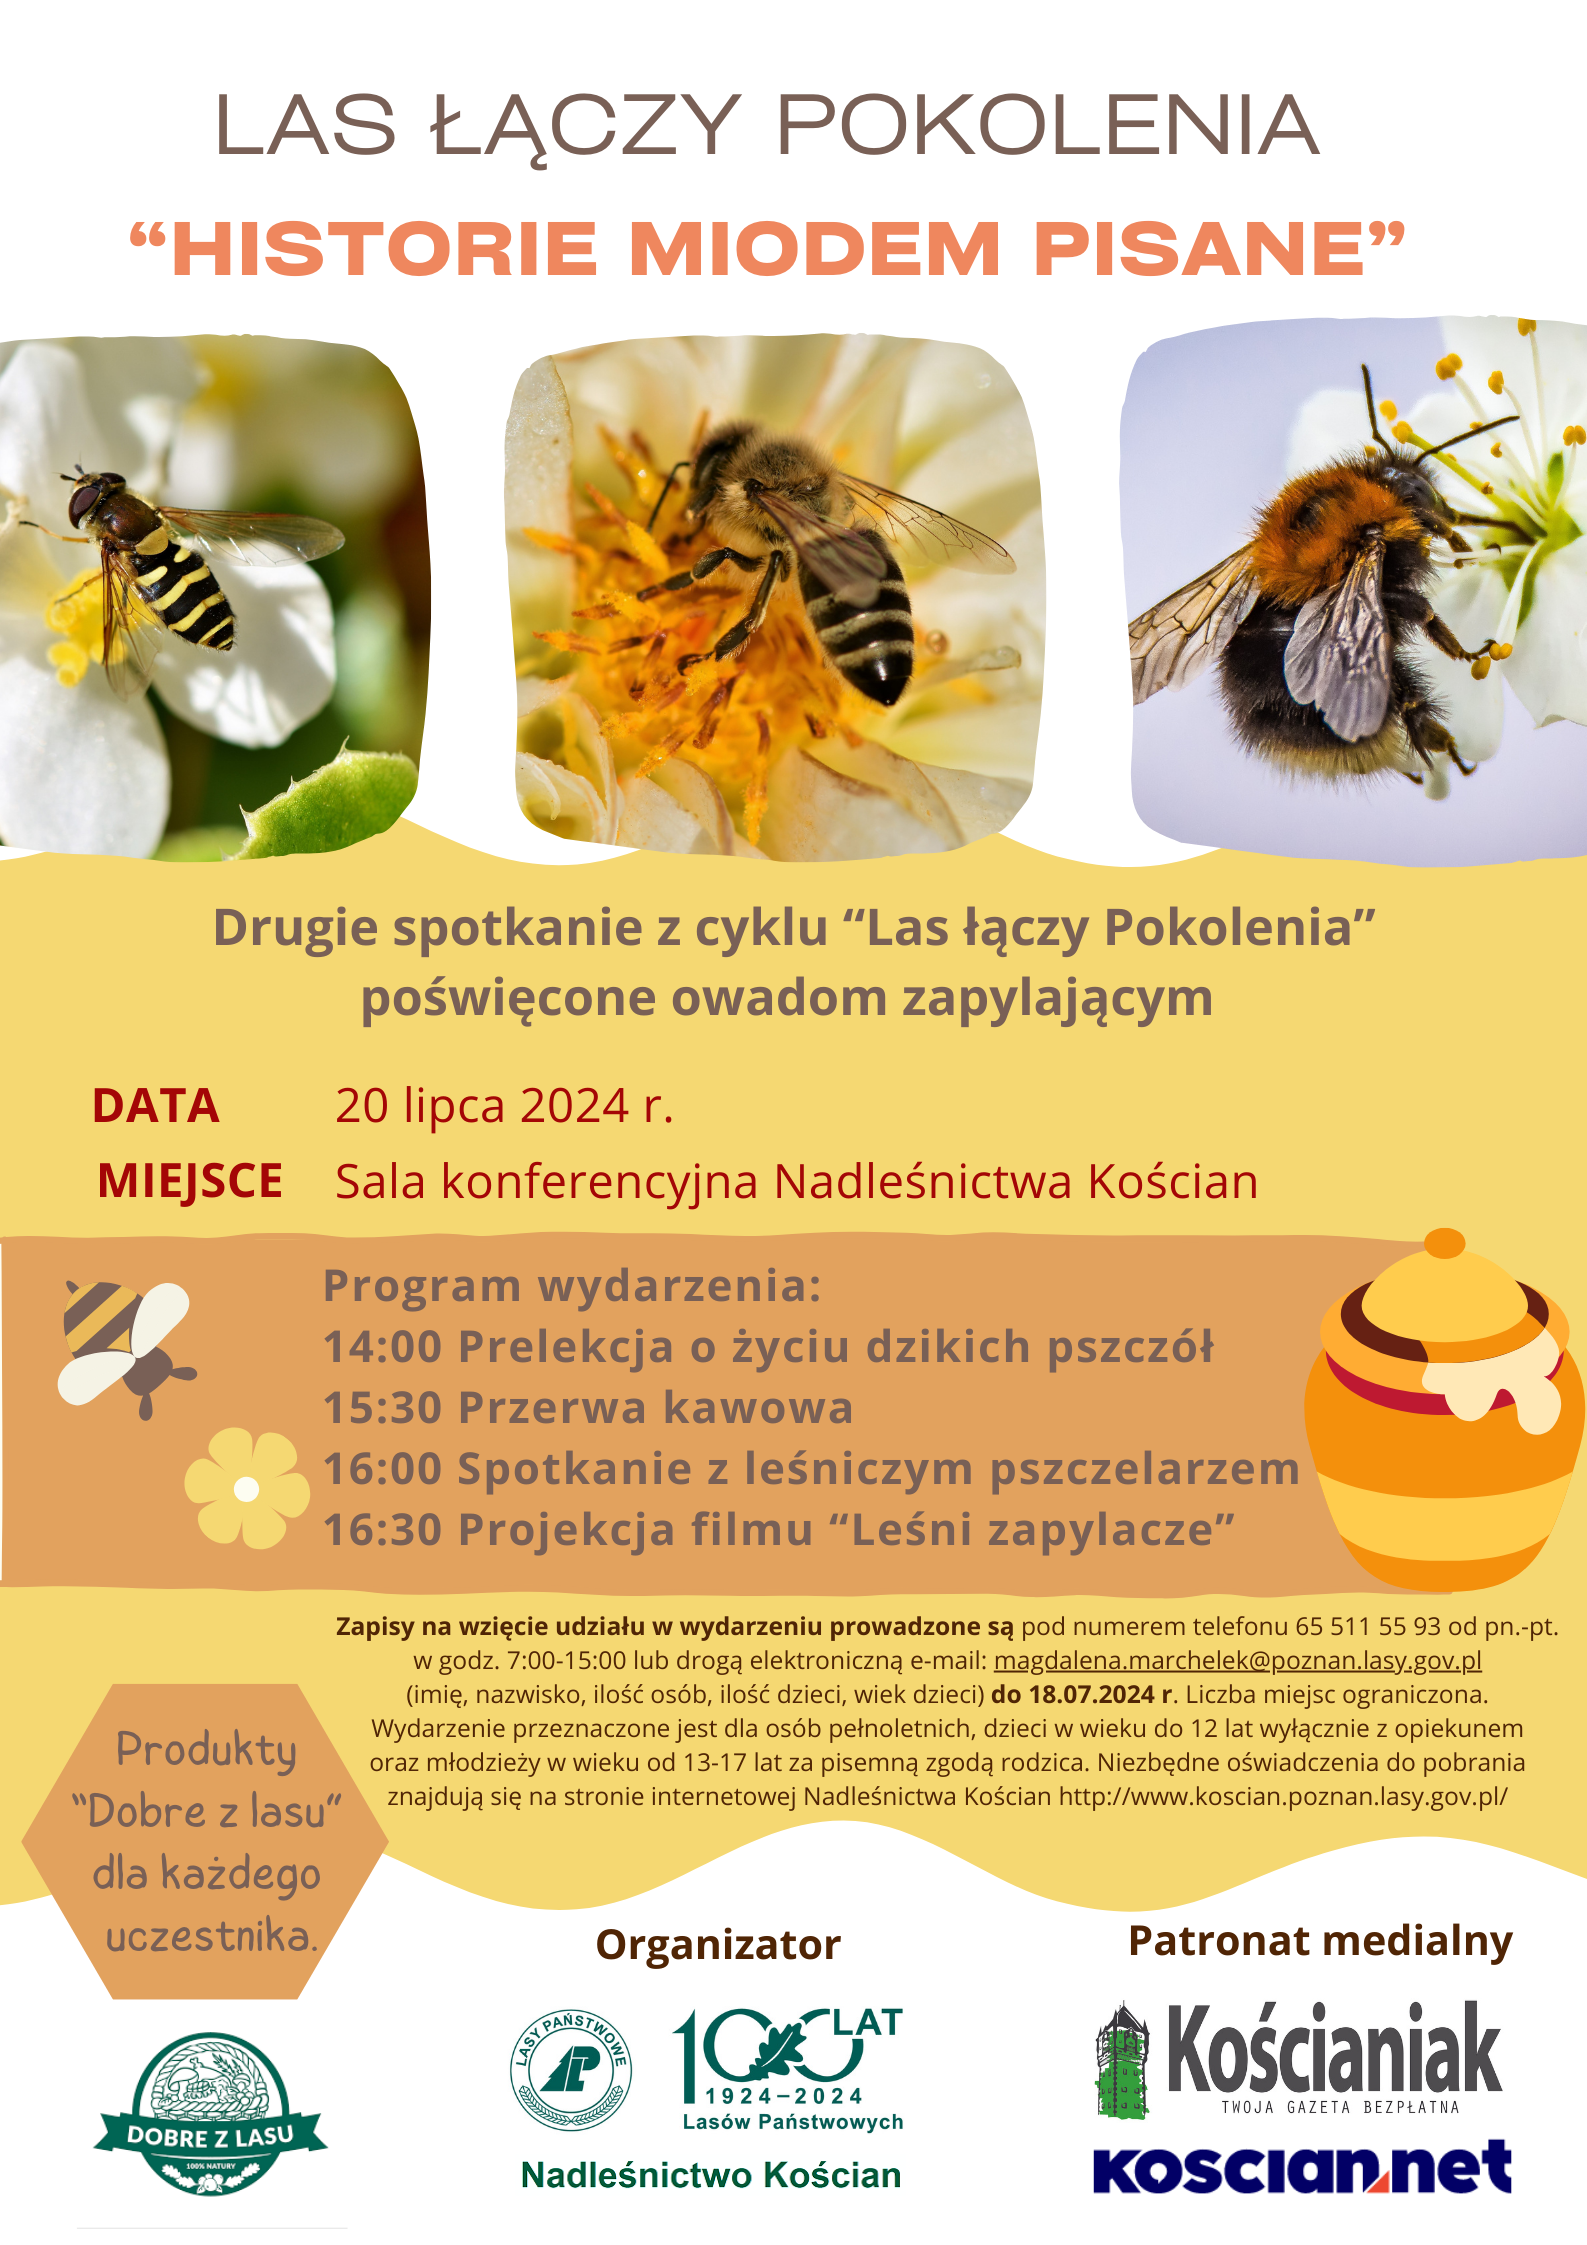 na zdjęciu plakat reklamujący wydarzenie. Plakat zawiera zdjęcia pszczół. Treść plakatu: LAS ŁĄCZY POKOLENIA "HISTORIE MIODEM PISANE" Drugie spotkanie z cyklu “Las łączy Pokolenia" poświęcone owadom zapylającym DATA: 20 lipca 2024 r. MIEJSCE: Sala konferencyjna Nadleśnictwa Kościan Program wydarzenia: 14:00 Prelekcja o życiu dzikich pszczół 15:30 Przerwa kawowa 16:00 Spotkanie z leśniczym pszczelarzem 16:30 Projekcja filmu “Leśni zapylacze" Zapisy na wzięcie udziału w wydarzeniu prowadzone są pod numerem telefonu 65 511 55 93 od pn.-pt. w godz. 7:00-15:00 lub drogą elektroniczną e-mail: magdalena.marchelek@poznan.lasy.gov.pl (imię, nazwisko, ilość osób, ilość dzieci, wiek dzieci) do 18.07.2024 r. Liczba miejsc ograniczona. Wydarzenie przeznaczone jest dla osób pełnoletnich, dzieci w wieku do 12 lat wyłącznie z opiekunem oraz młodzieży w wieku od 13-17 lat za pisemną zgodą rodzica. Niezbędne oświadczenia do pobrania "Dobre z lasu" znajdują się na stronie internetowej Nadleśnictwa Kościan http://www.koscian.poznan.lasy.gov.pl/ Produkty "Dobre z lasu" dla każdego uczestnika. Organizator: dobre z lasu, Nadleśnictwo Kościan, Patronat medialny Kościaniak TWOJA GAZETA BEZPŁATNA.